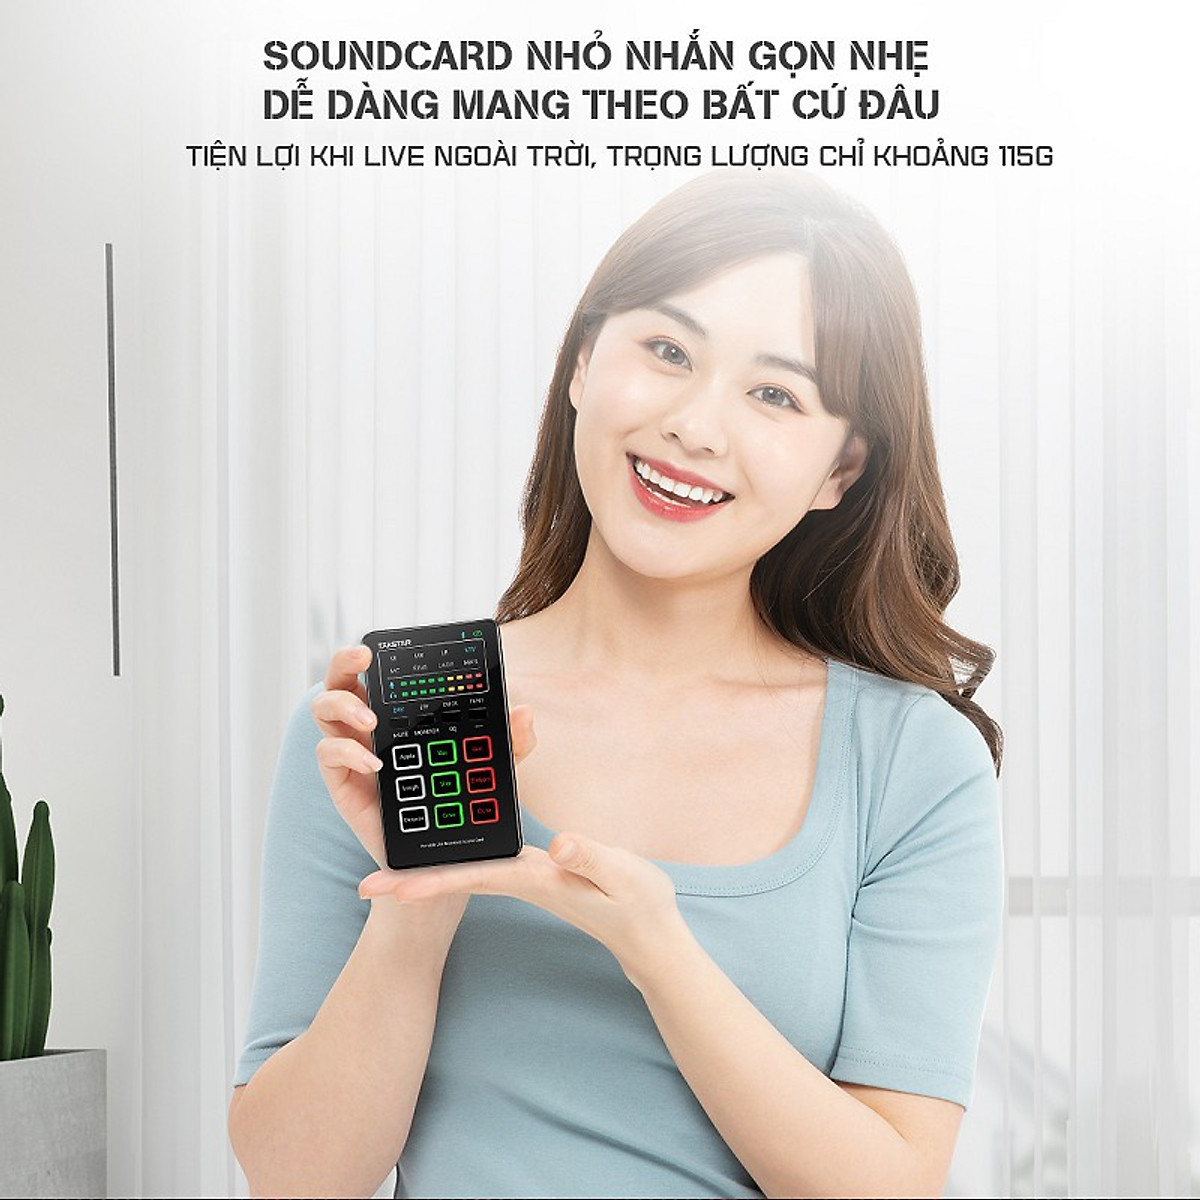 Combo trọn bộ mic thu âm chính hãng Takstar MX1 mini, tai nghe Ts-2260 và đầy đủ phụ kiện thu âm, livestream, hát karaoke online - AVSTAR - hàng chính hãng